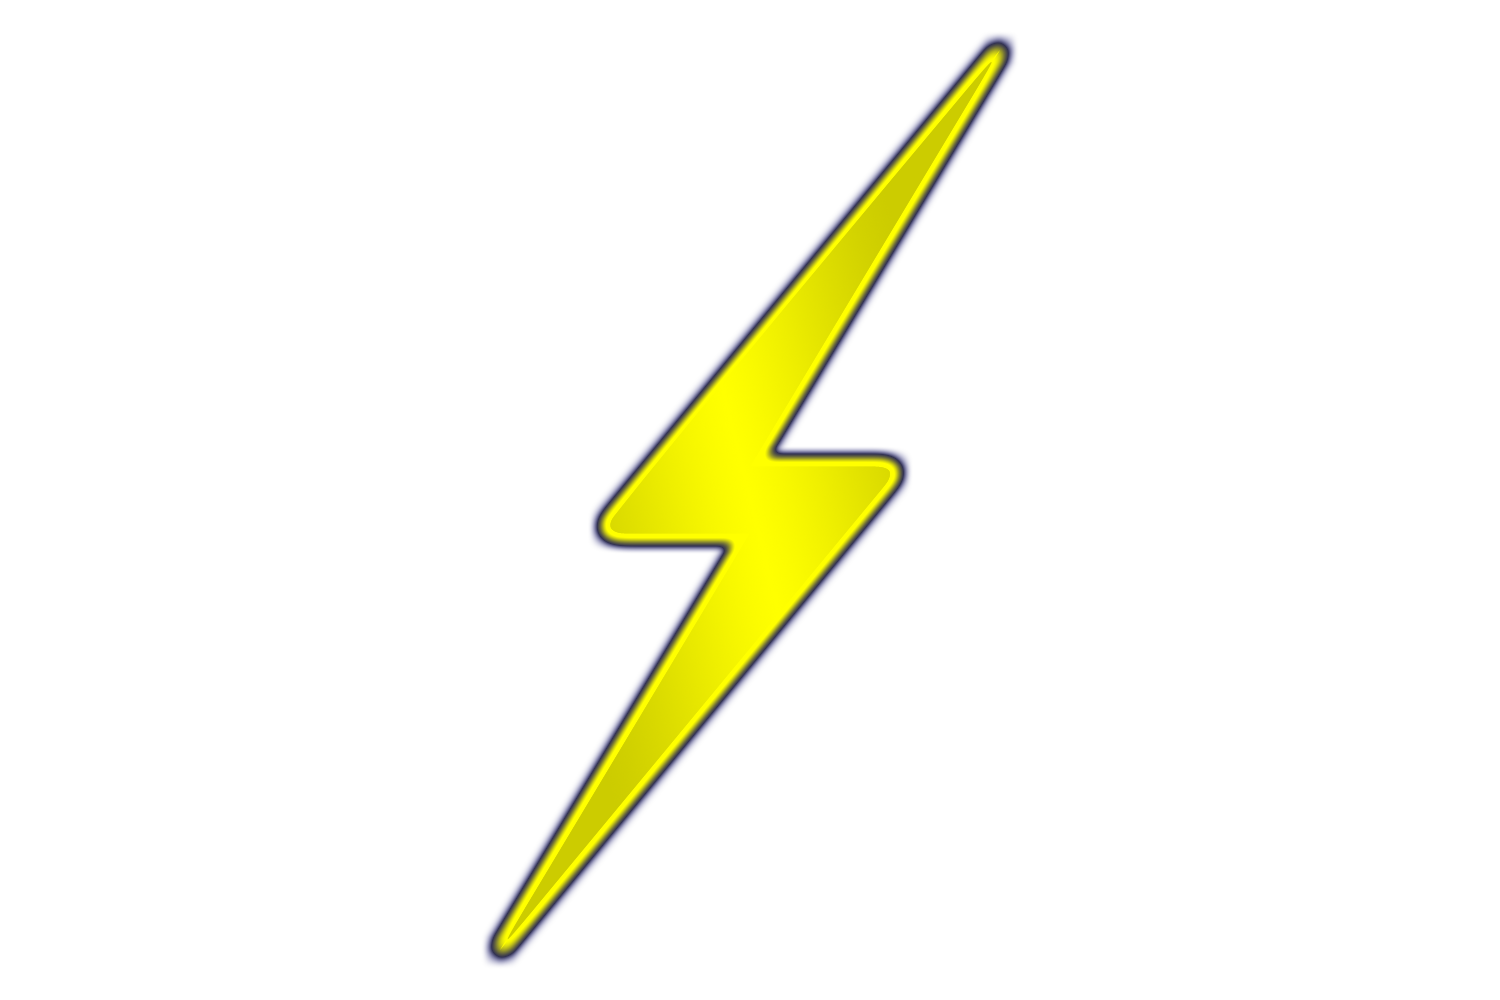 Lightning bolt lightning silhouette clipart image #15954